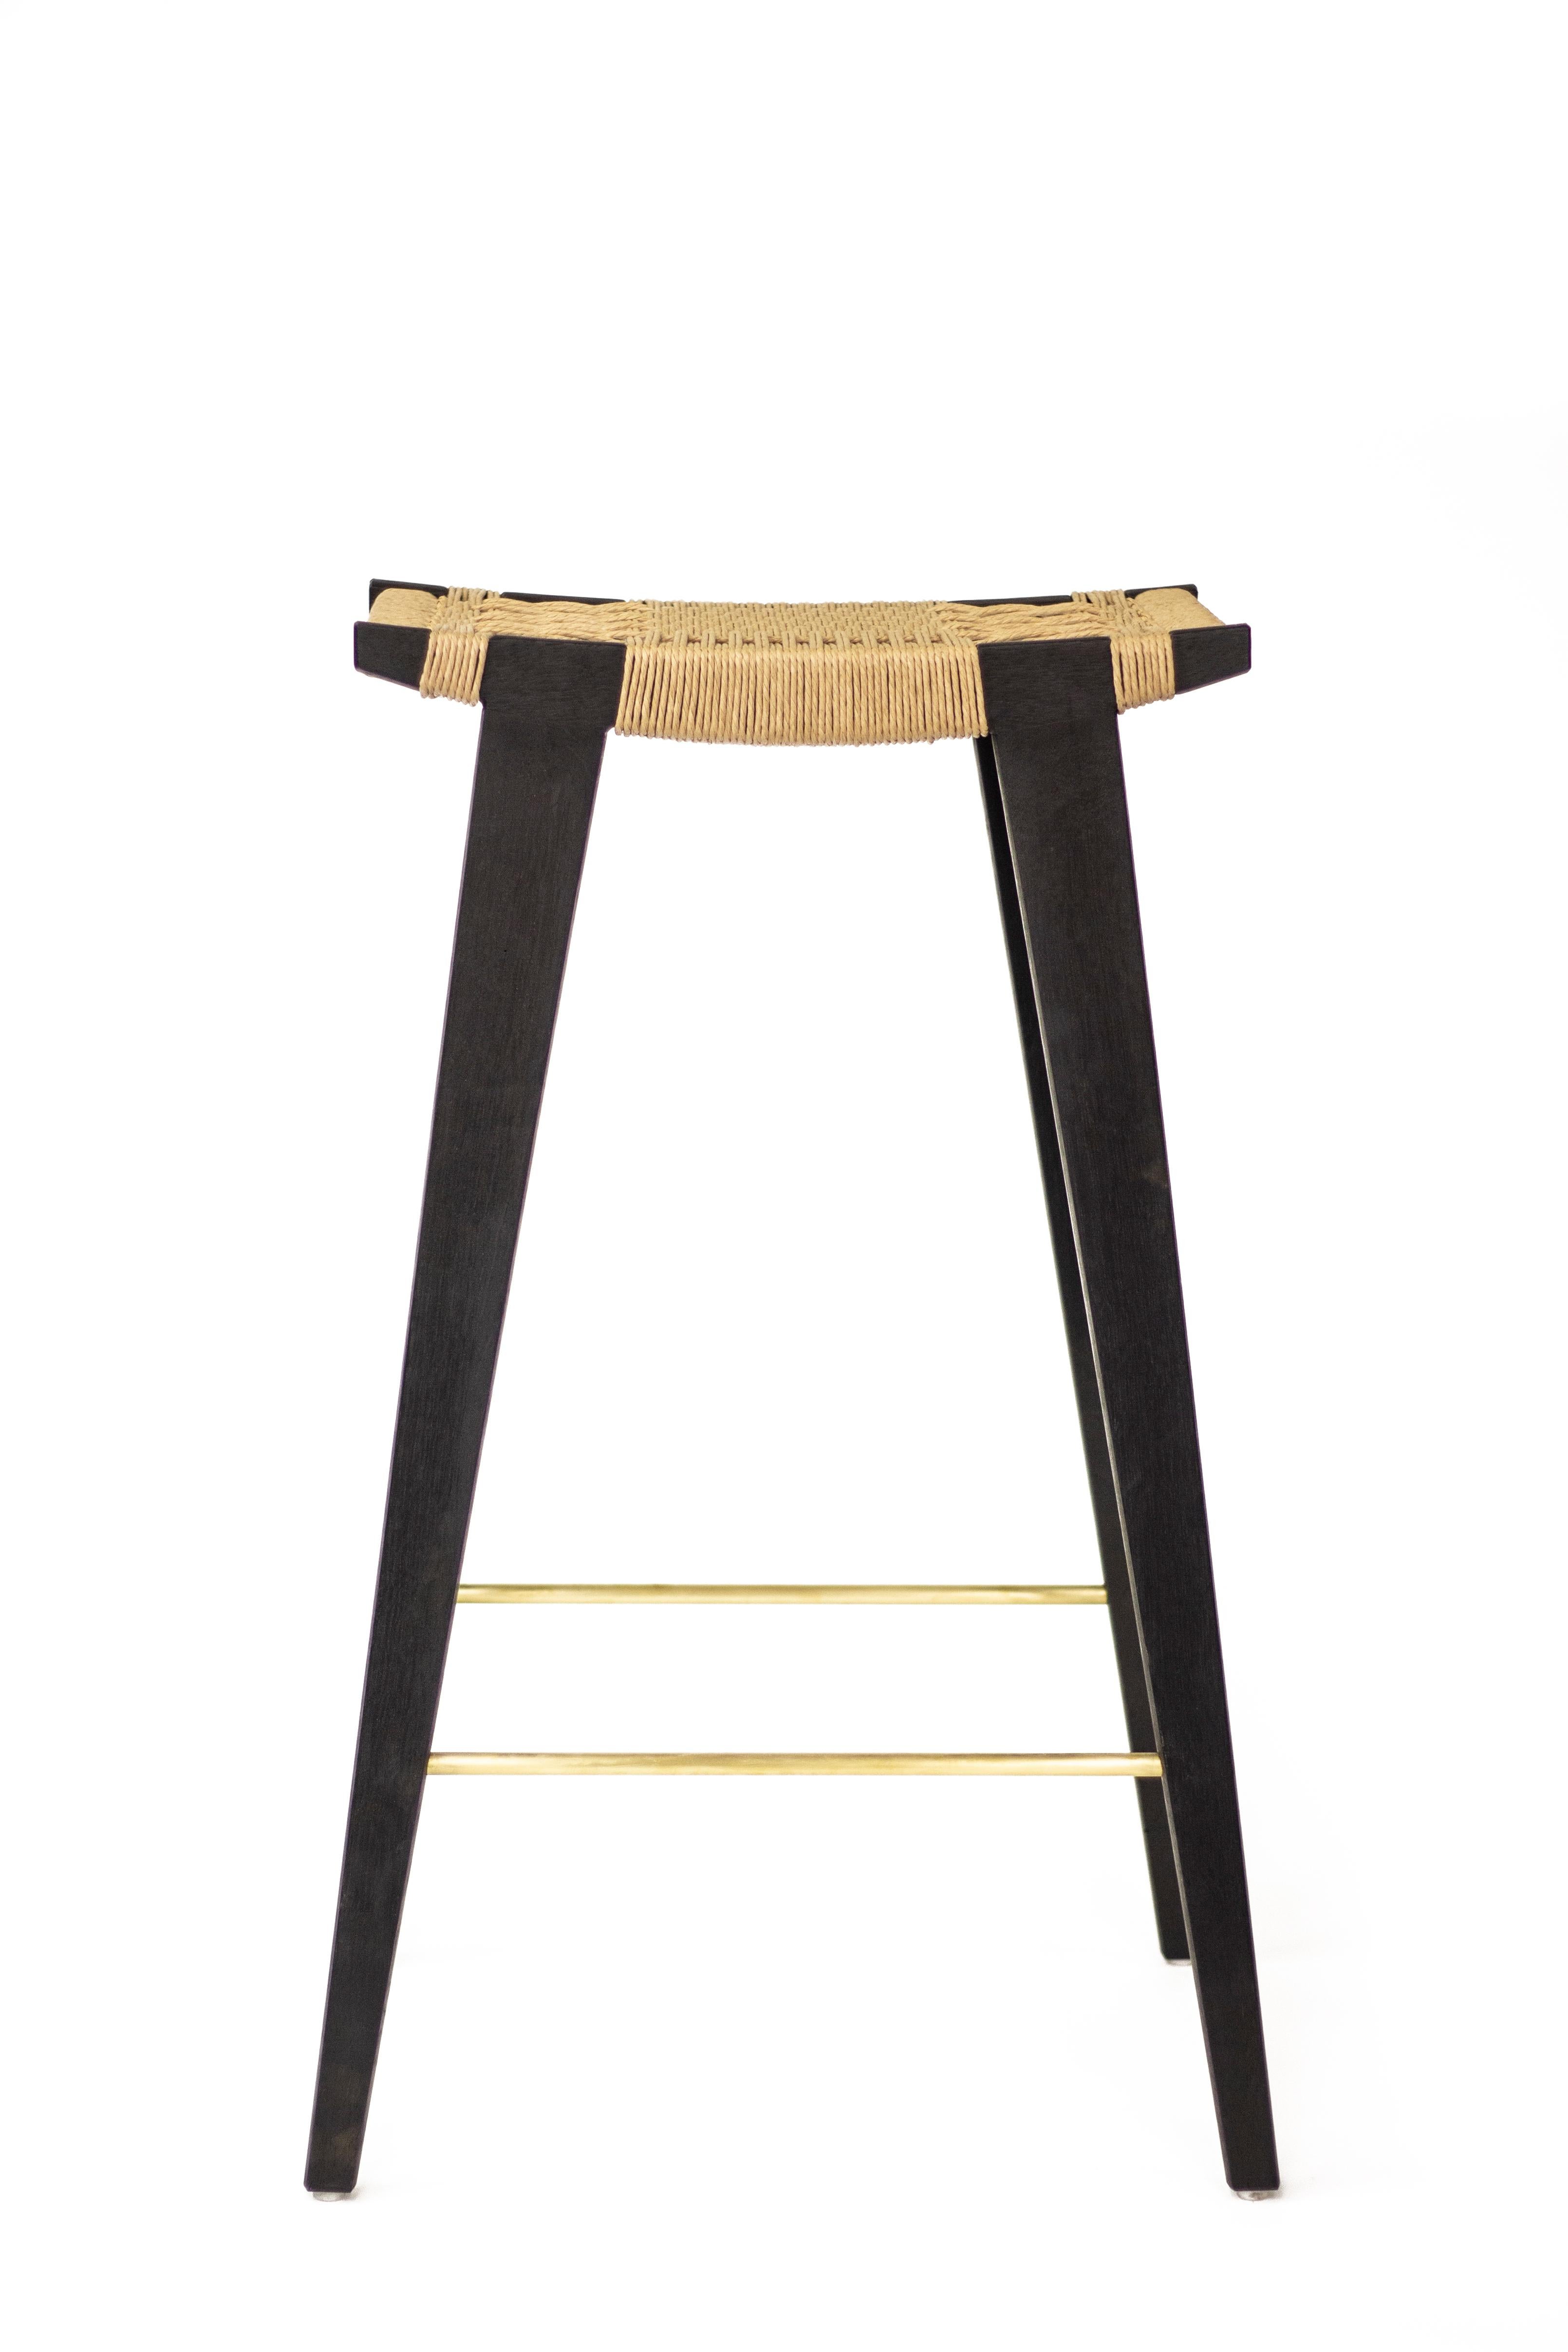 danish bar stool